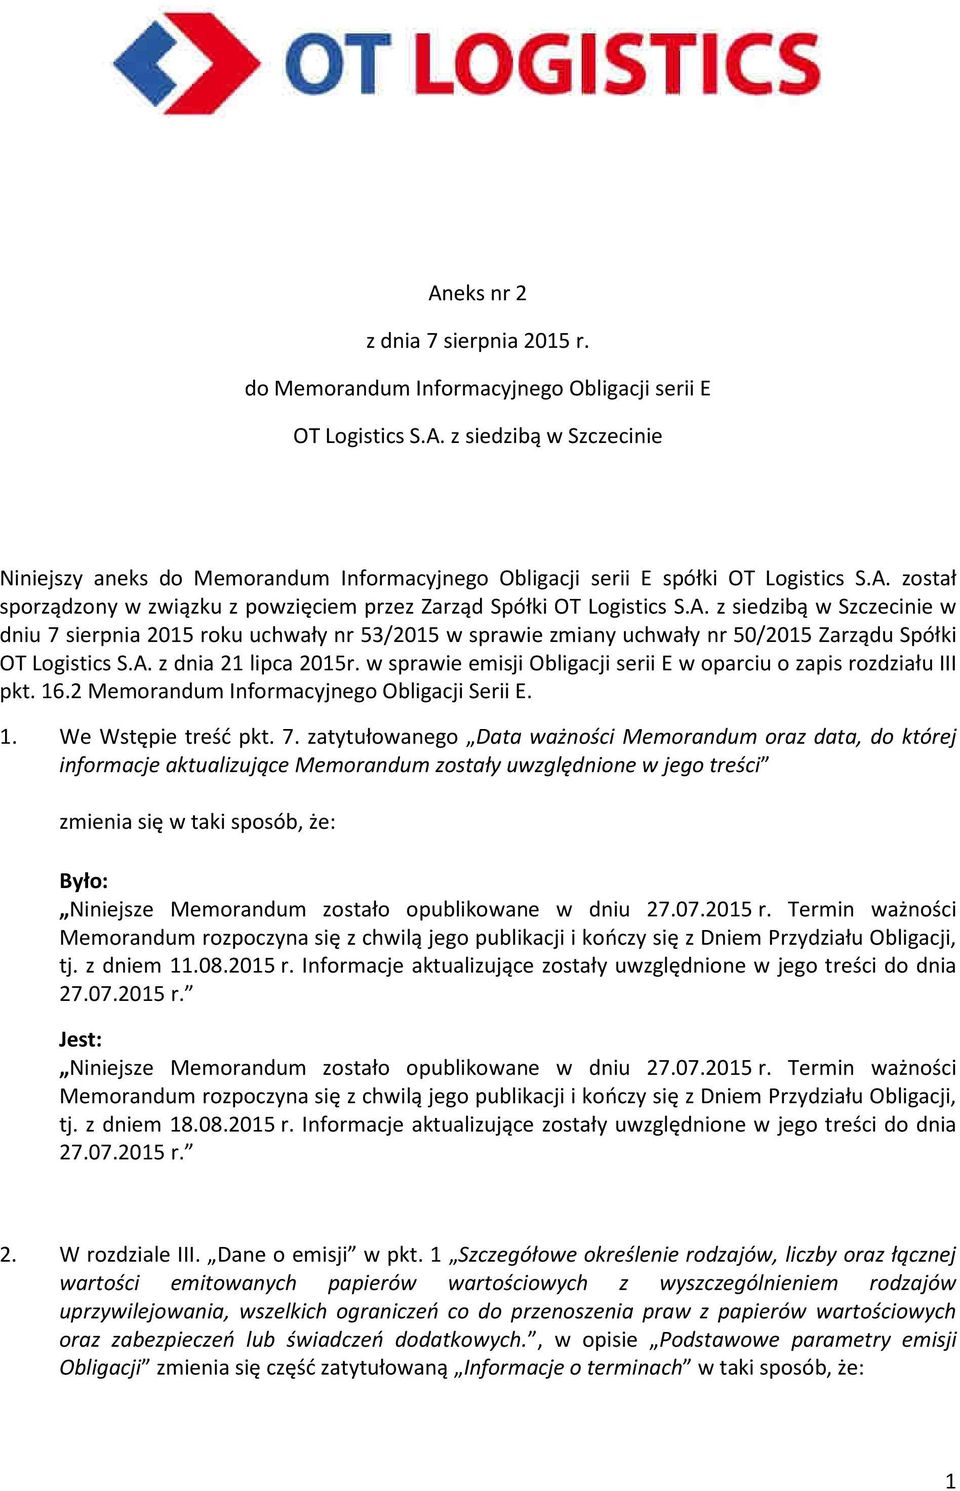 A. z dnia 21 lipca 2015r. w sprawie emisji Obligacji serii E w oparciu o zapis rozdziału III pkt. 16.2 Memorandum Informacyjnego Obligacji Serii E. 1. We Wstępie treść pkt. 7.